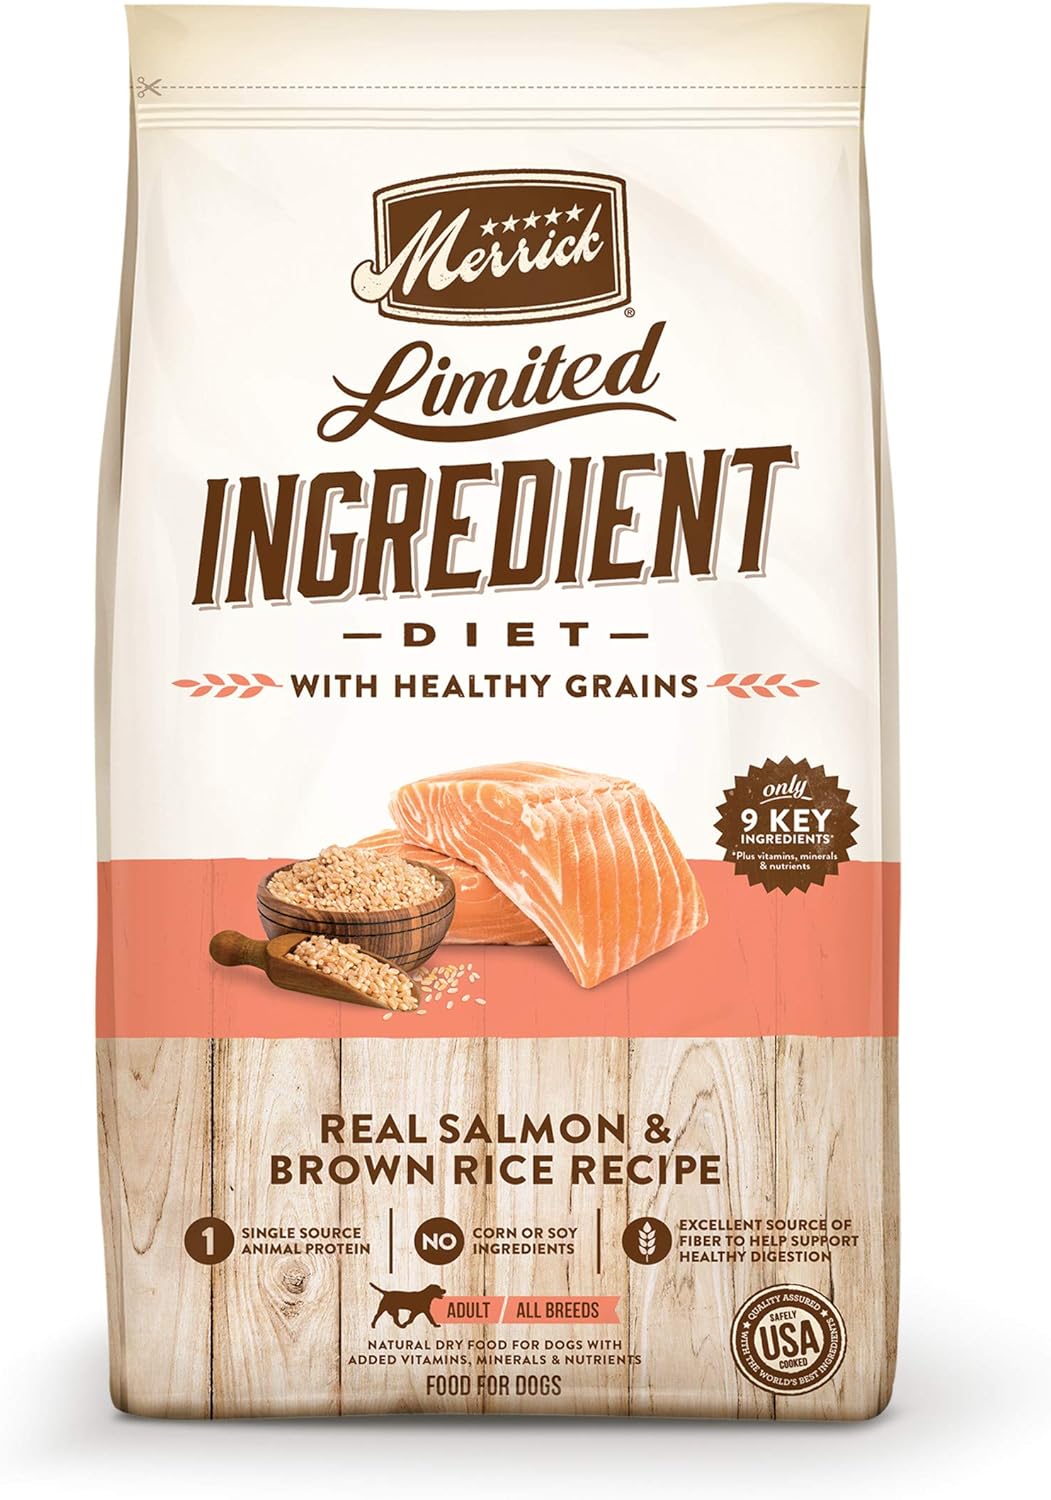 Merrick Limited Ingredient Diet with Healthy Grains (régime à base d'ingrédients limités et de céréales saines)